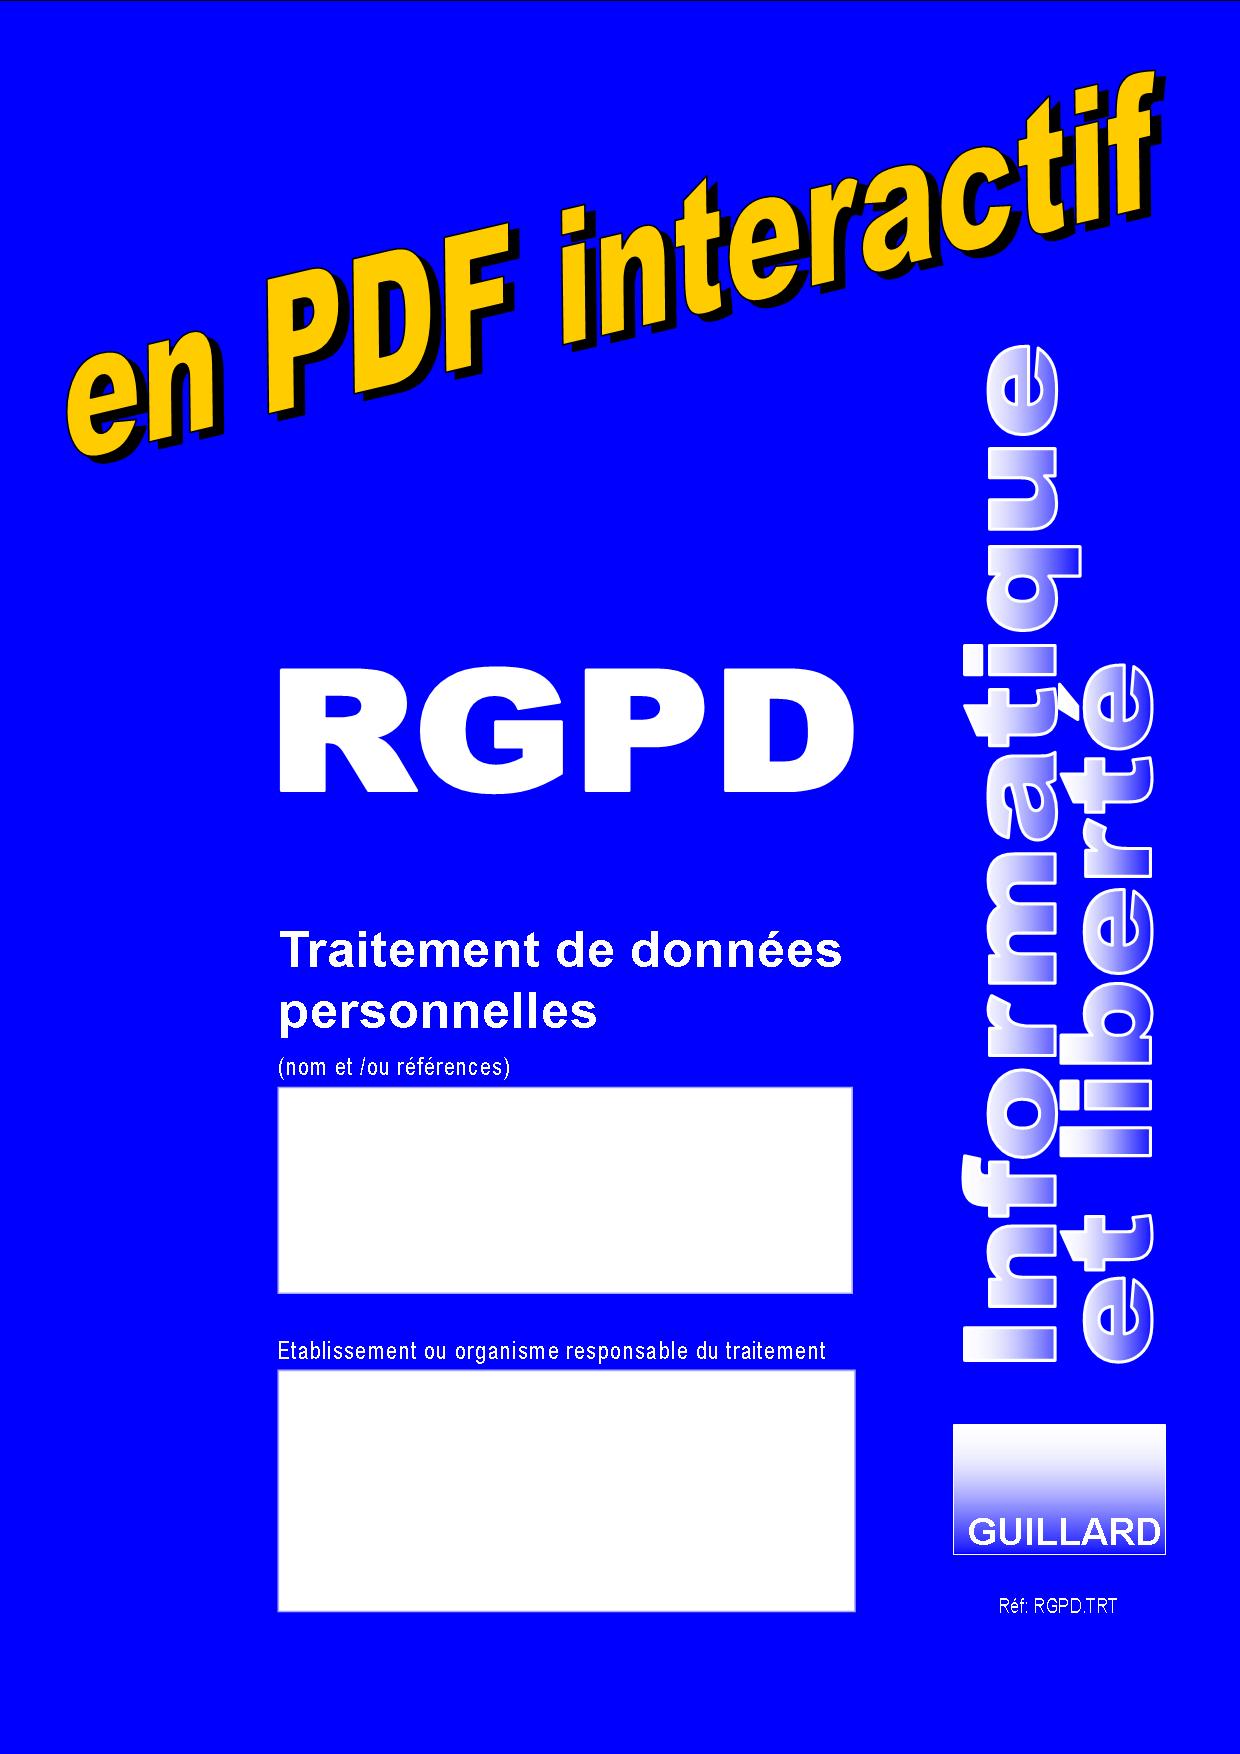  Registre RGPD   Traitement des données personnelles en PDF Interactif- Formulaire RGPD.TRT.PDF